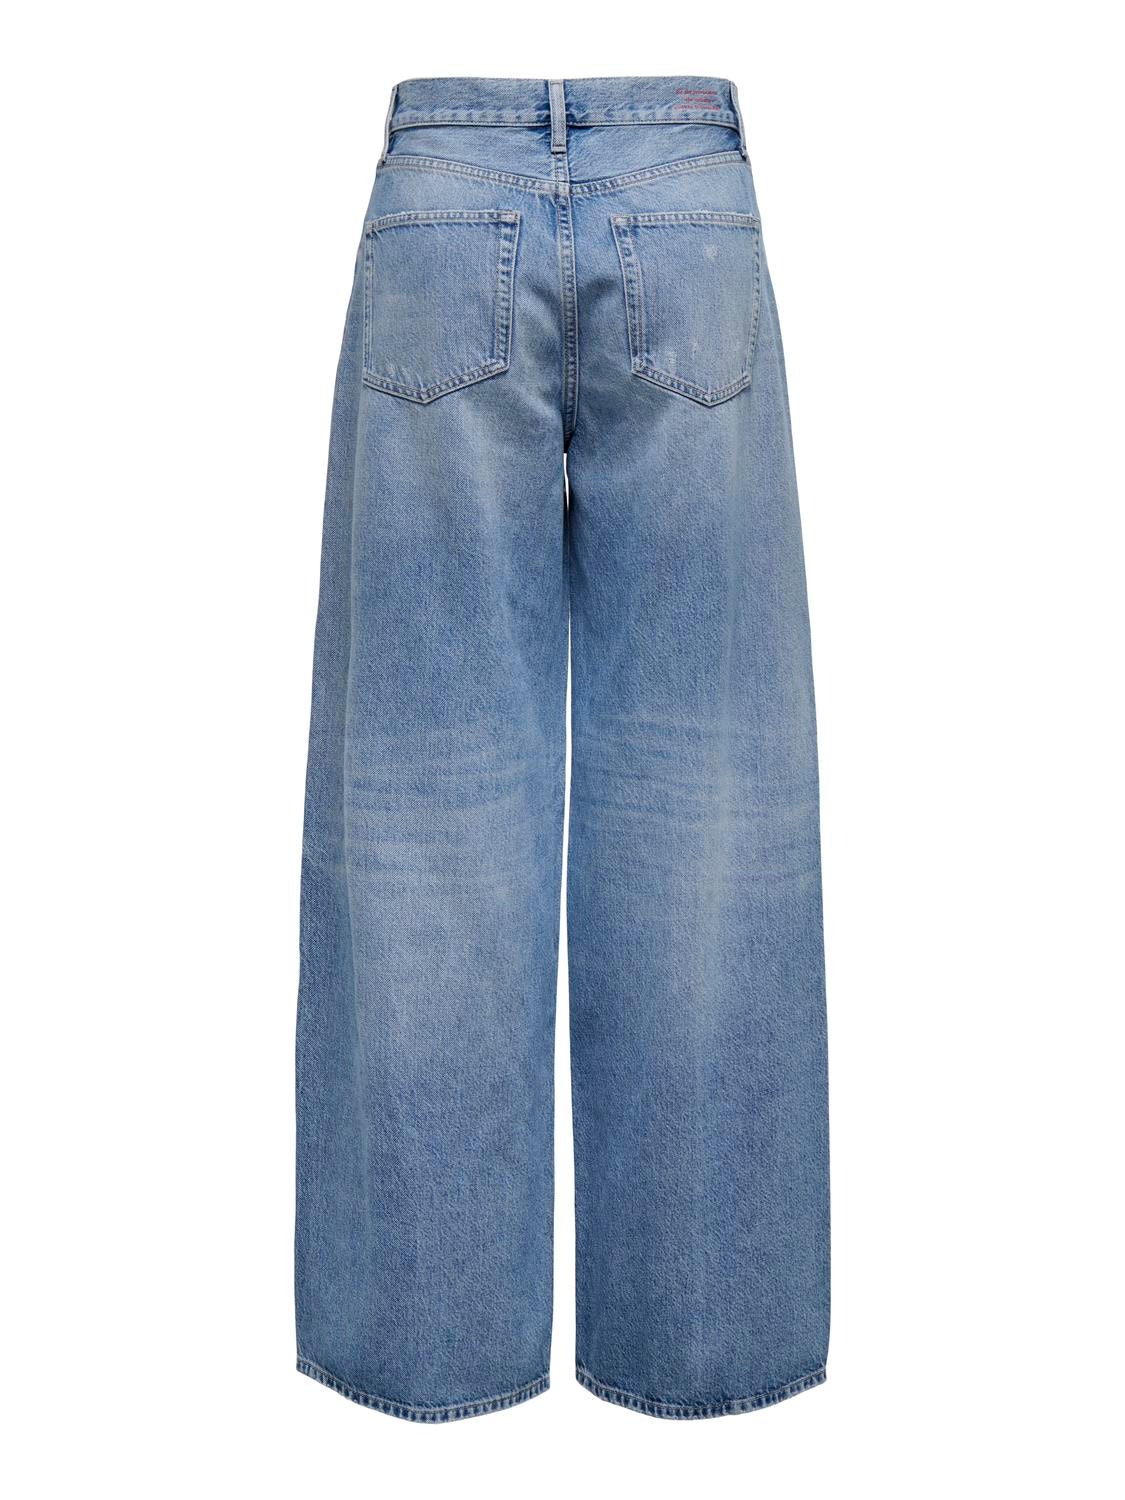 ONLY Weiter Beinschnitt Hohe Taille Jeans -Medium Blue Denim - 15315093